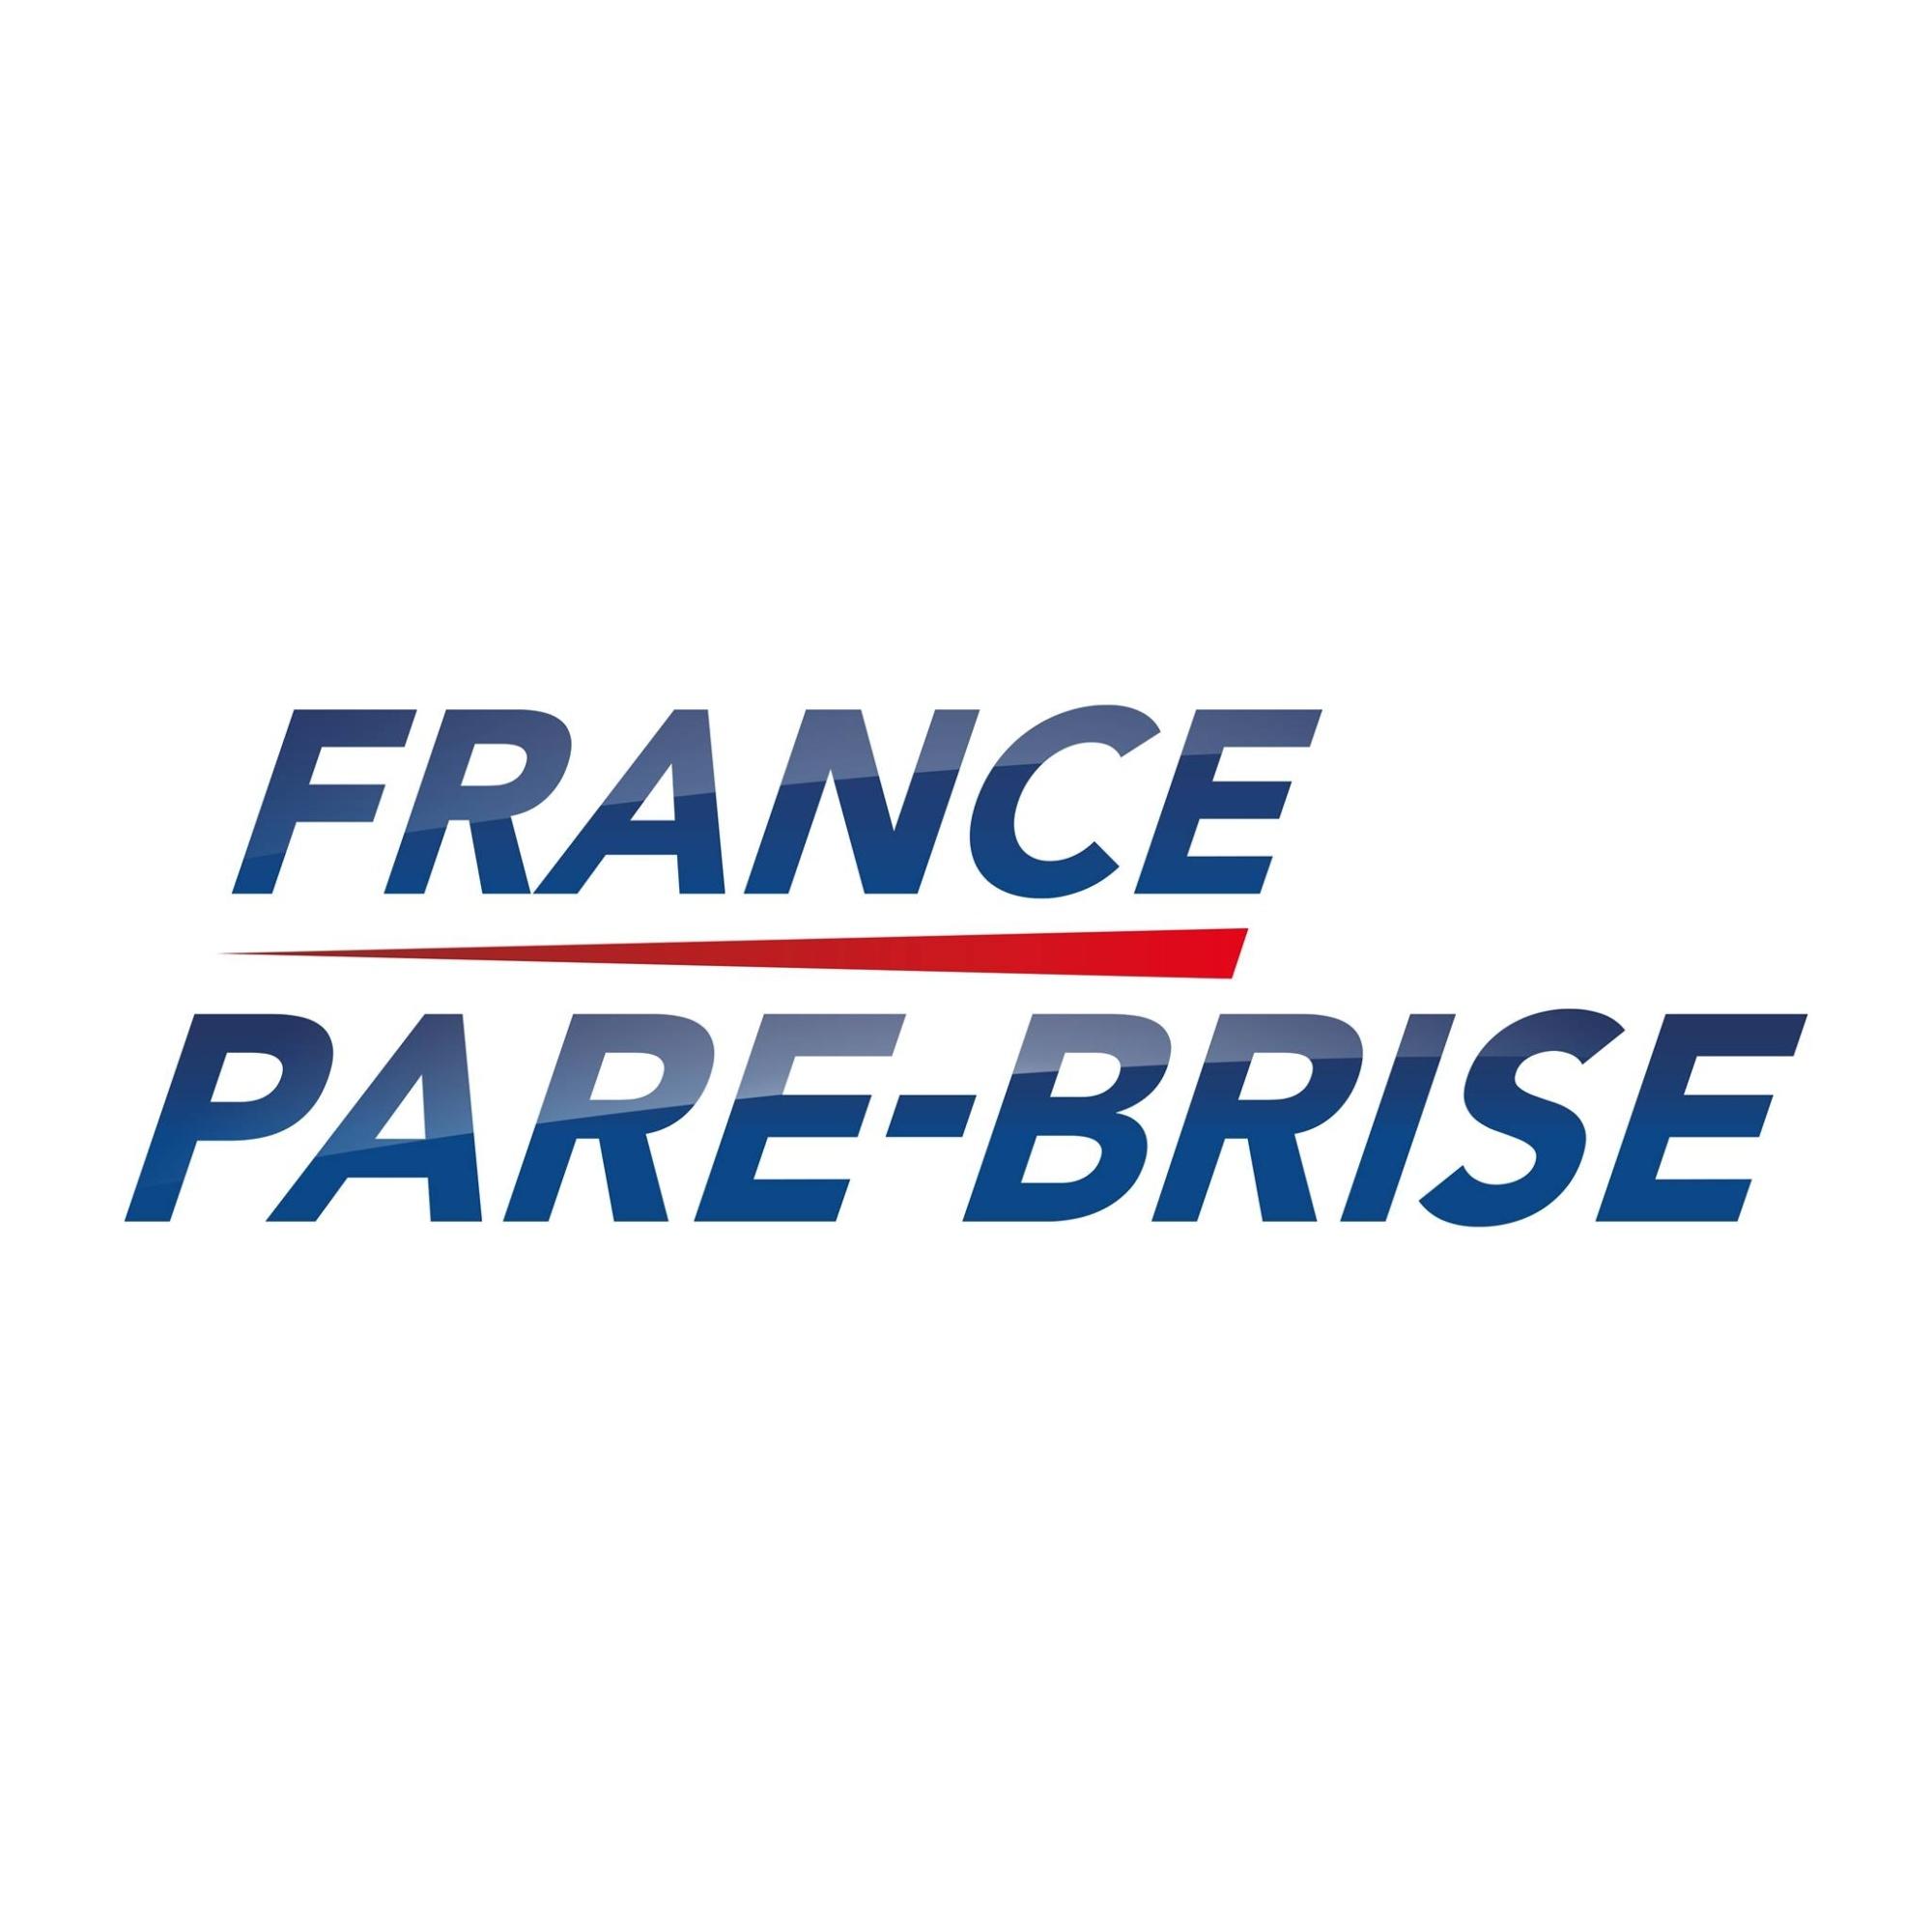 France Pare-brise Casteljaloux